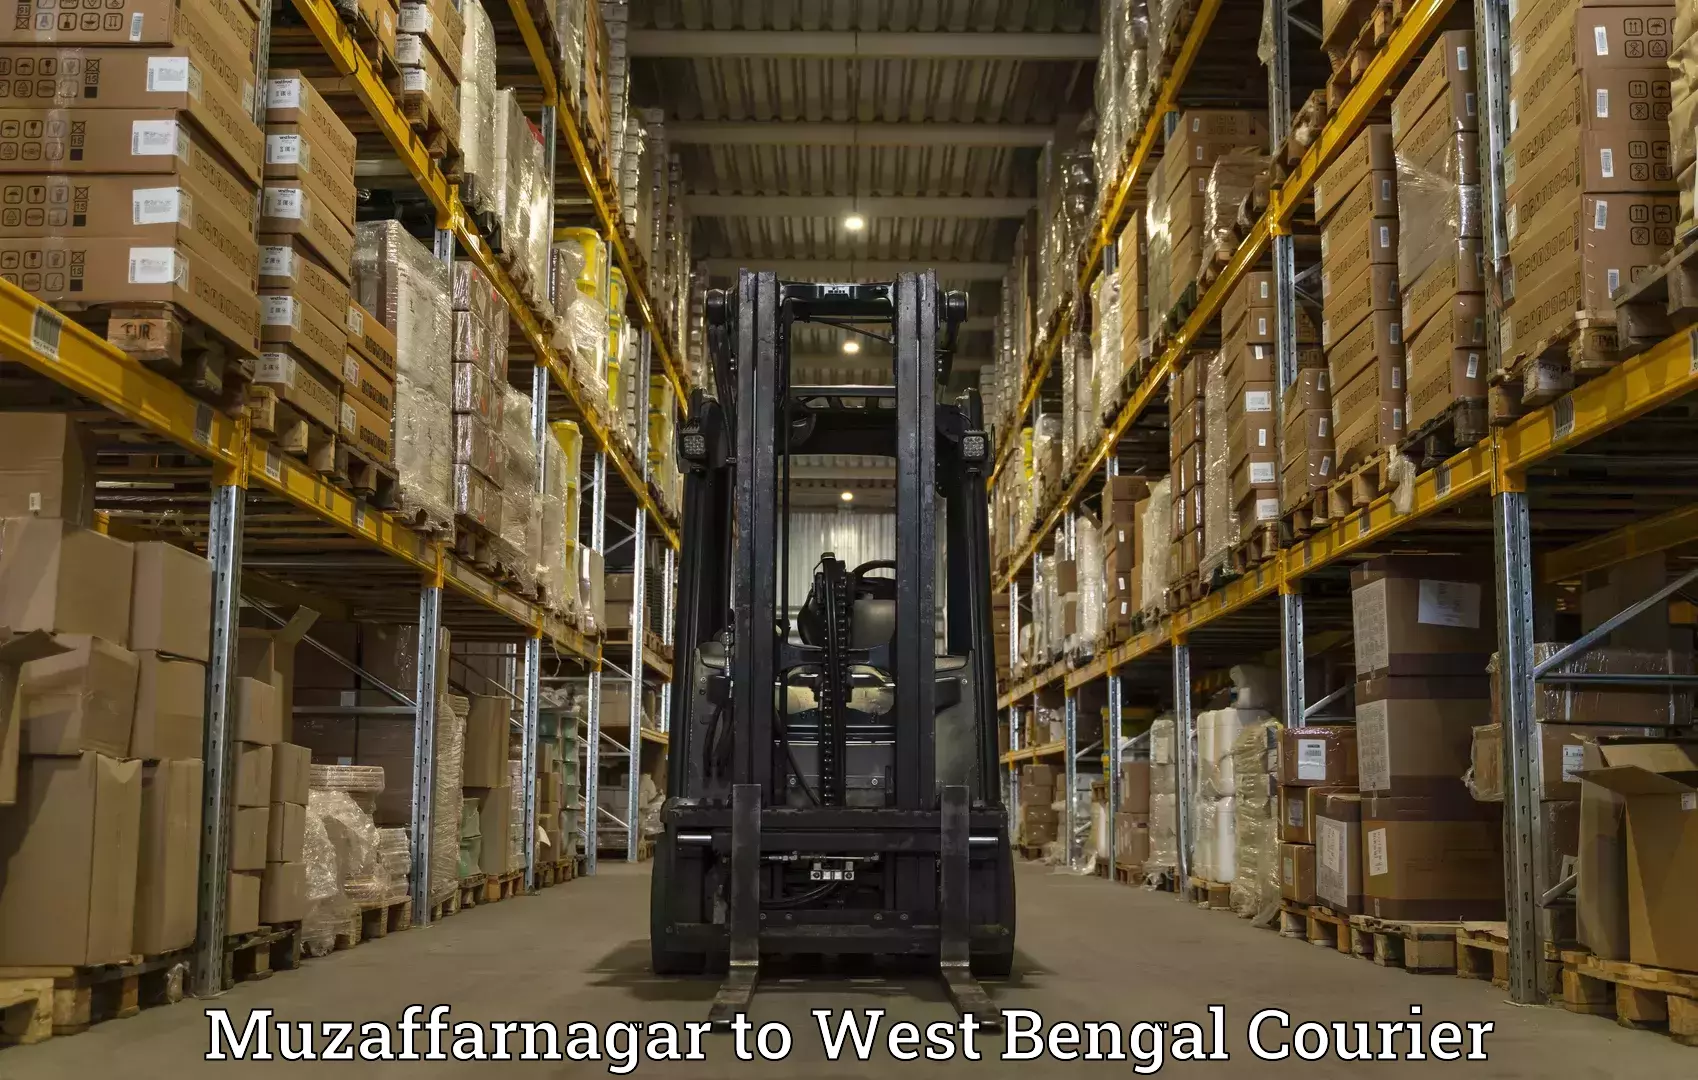 Customer-oriented courier services Muzaffarnagar to West Bengal